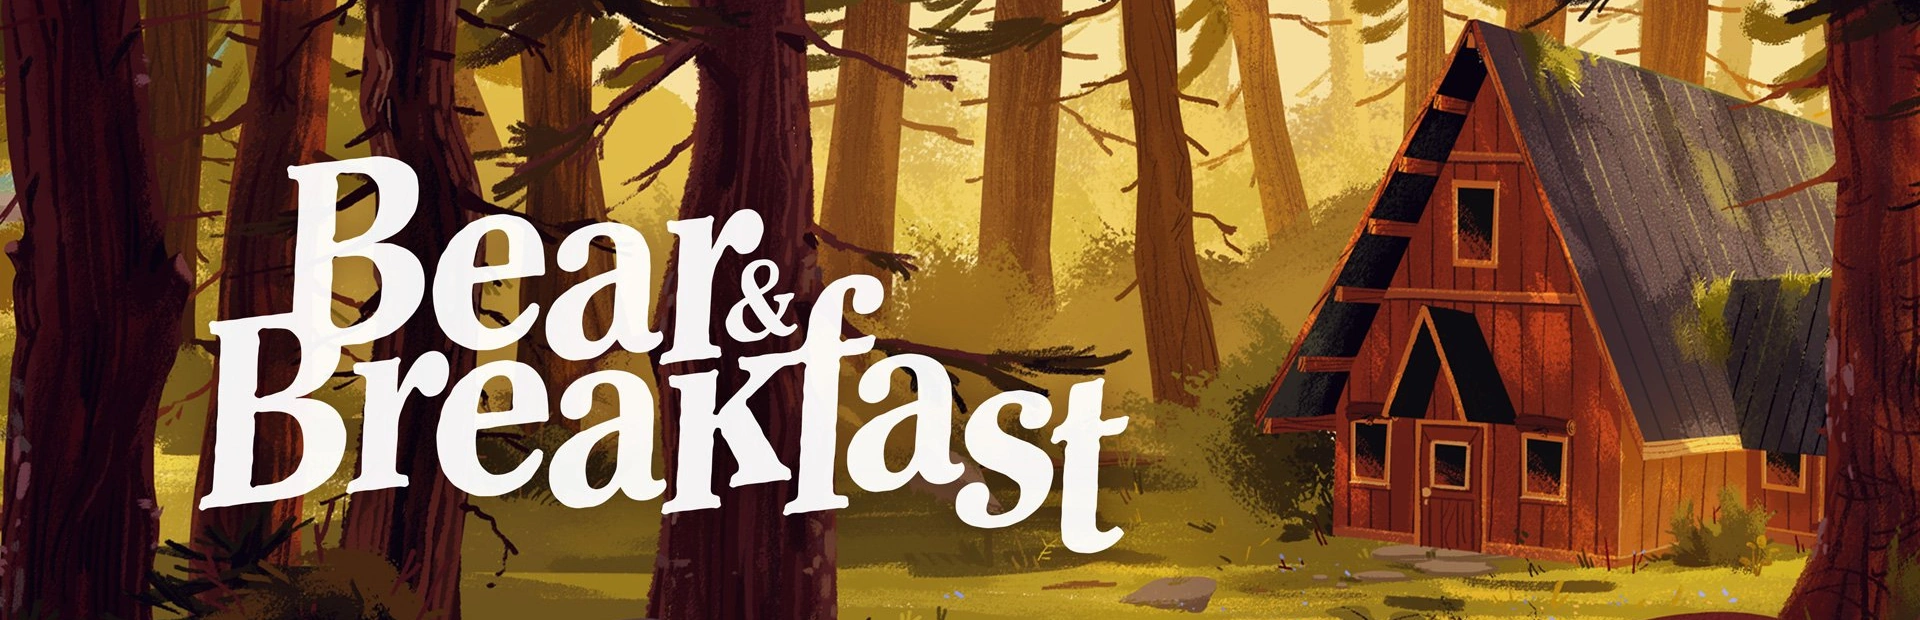 دانلود بازی Bear and Breakfast برای PC | گیمباتو